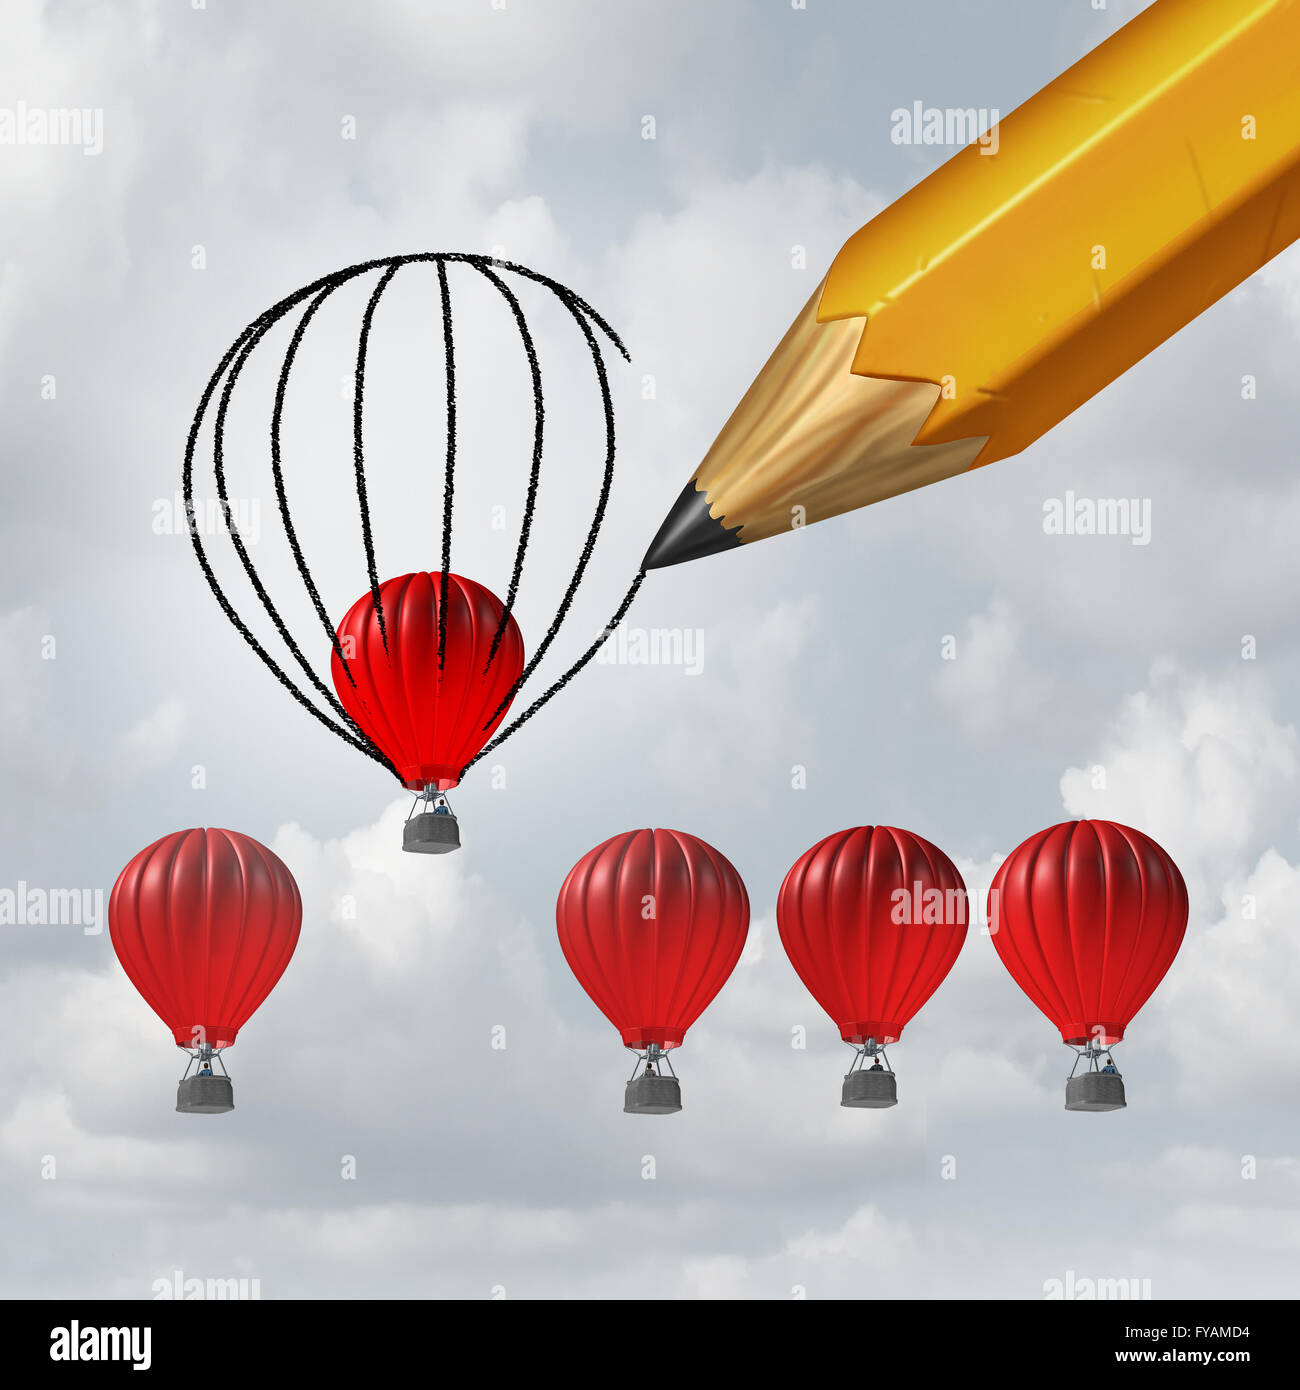 Machen Sie Dinge besser und Verbesserung Konzept als eine Gruppe von konkurrierenden Luftballons als eine einzelne Winer durch eine Bleistiftzeichnung einer größeren Form, wodurch ein Vorteil mit 3D Abbildung Elemente half. Stockfoto